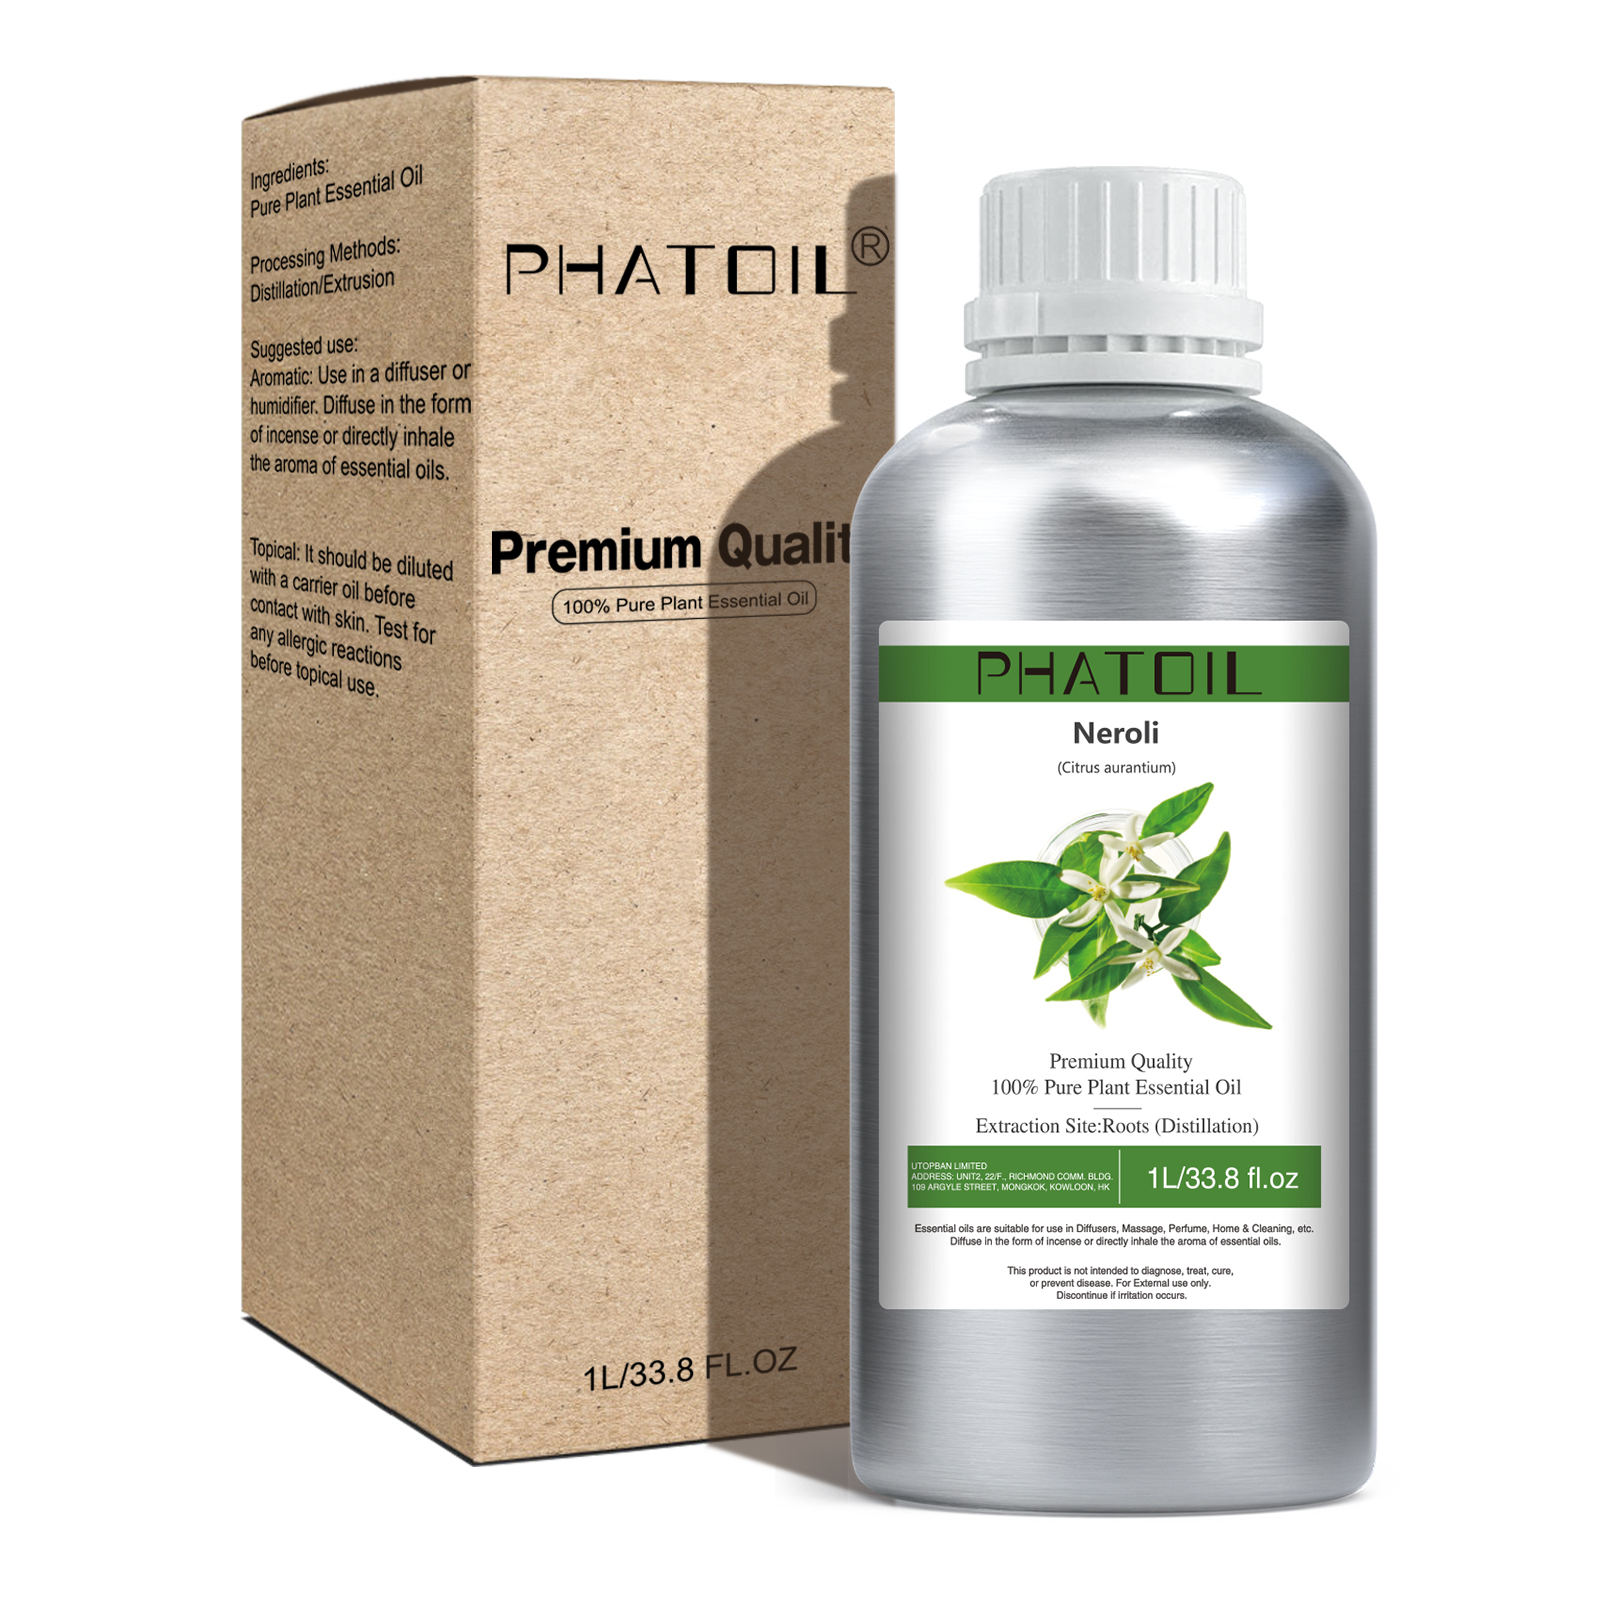 Phatoil 1L Neroli Essential Oil With Aluminium Bottle